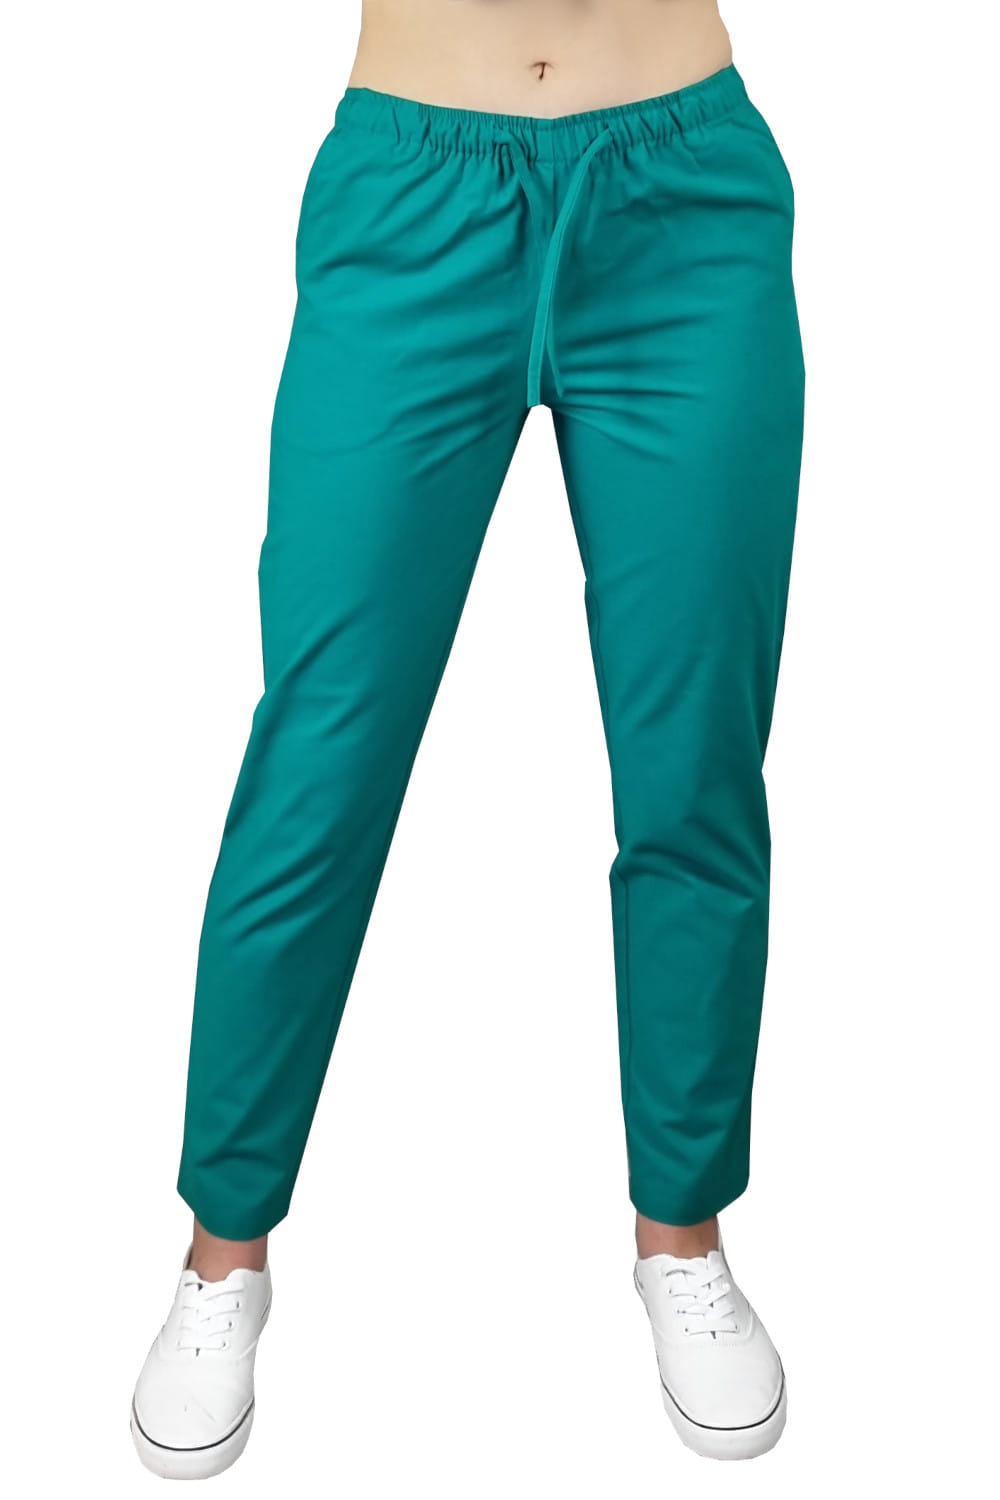 Zdravotnícke dámske bavlnené nohavice-Zelené #1